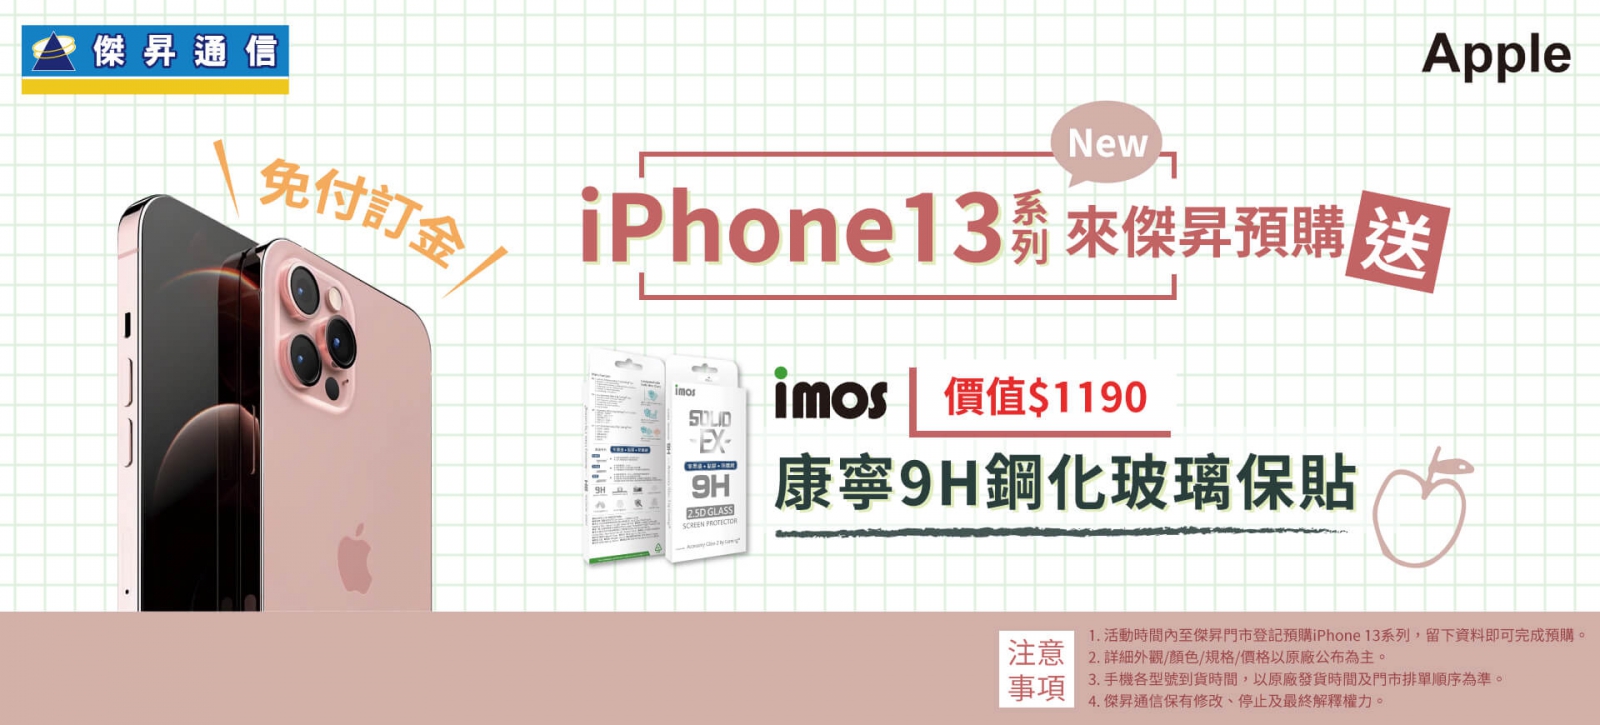 iPhone 13預購來傑昇 免付訂金再送千元配件